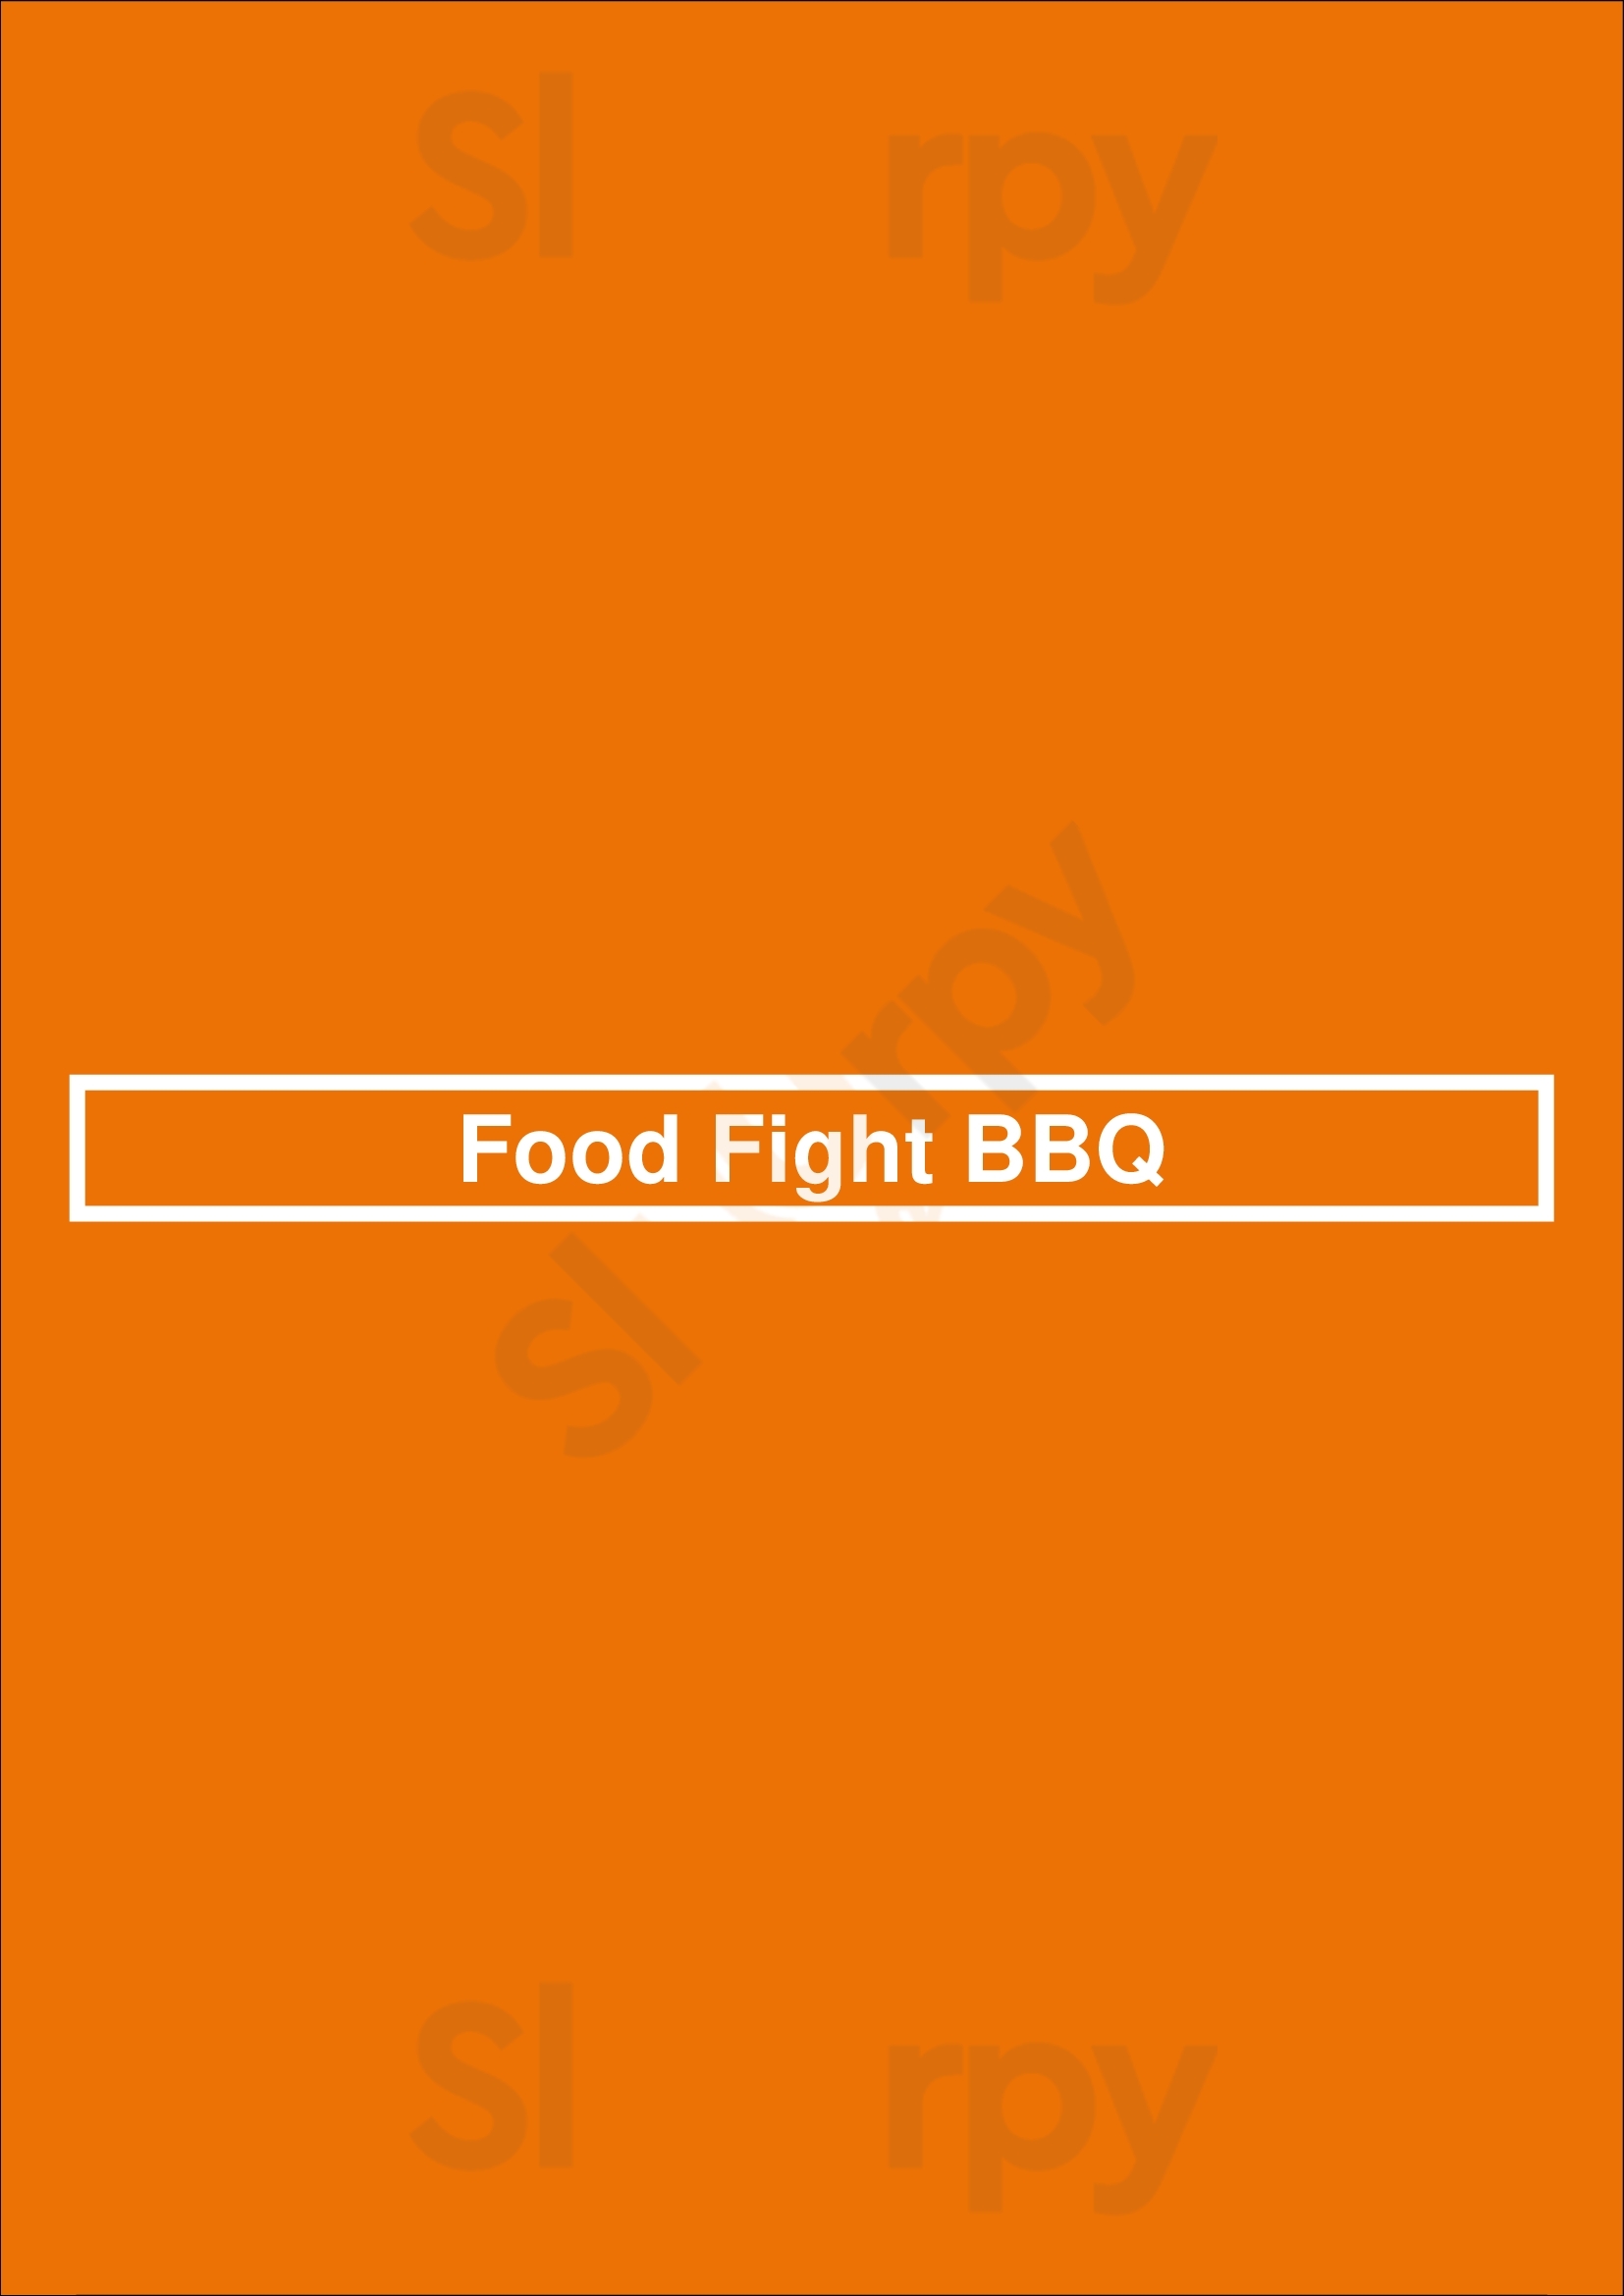 Food Fight Bbq Brampton Menu - 1